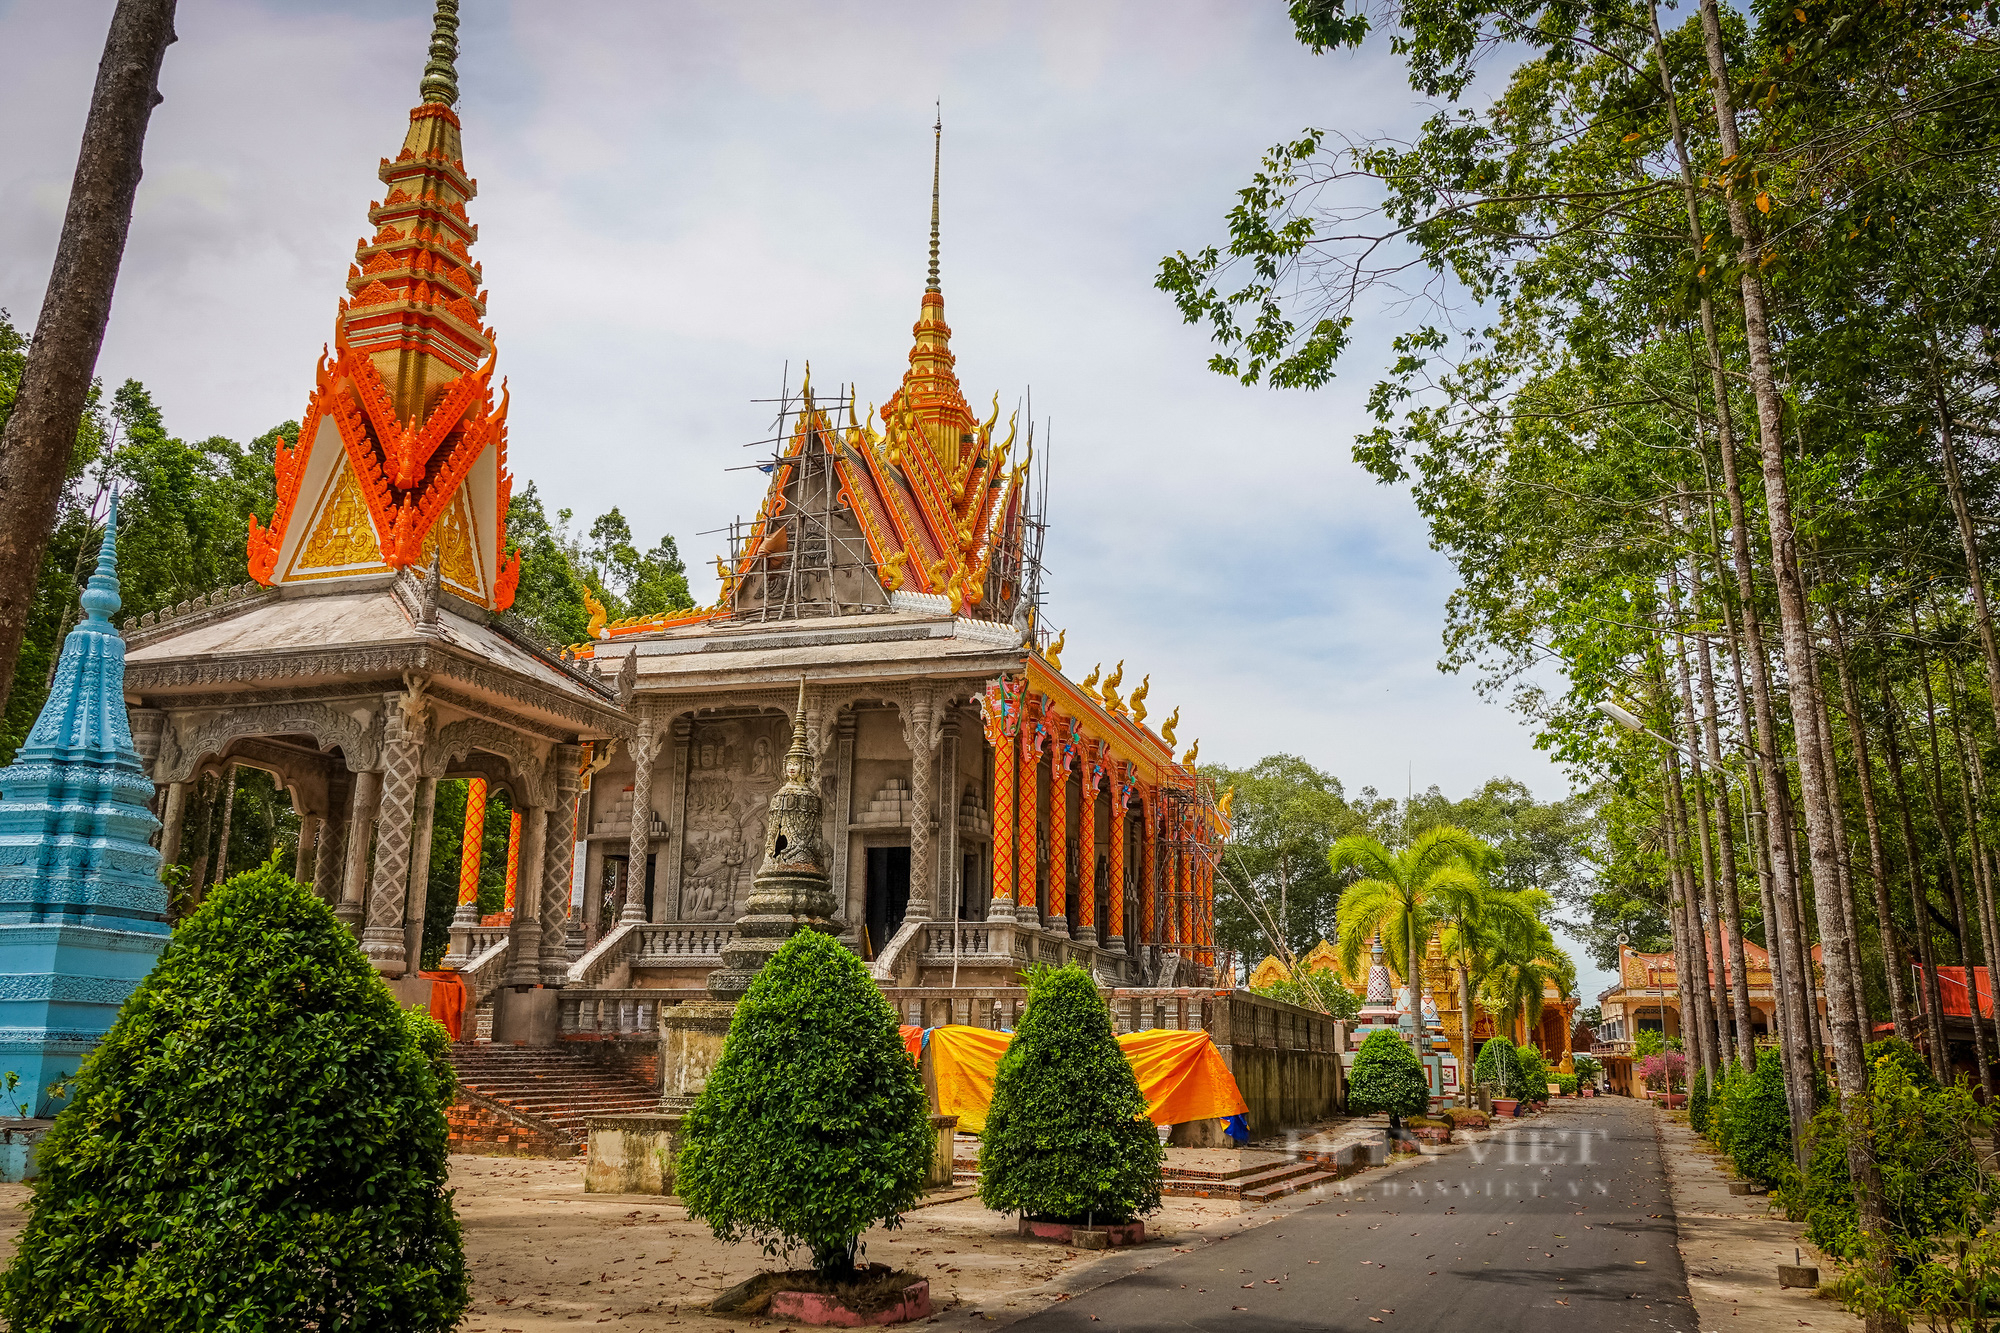 Ngôi chùa Khmer trăm năm tuổi với hàng trăm cây sao cổ thụ “độc” nhất Sóc Trăng - Ảnh 6.